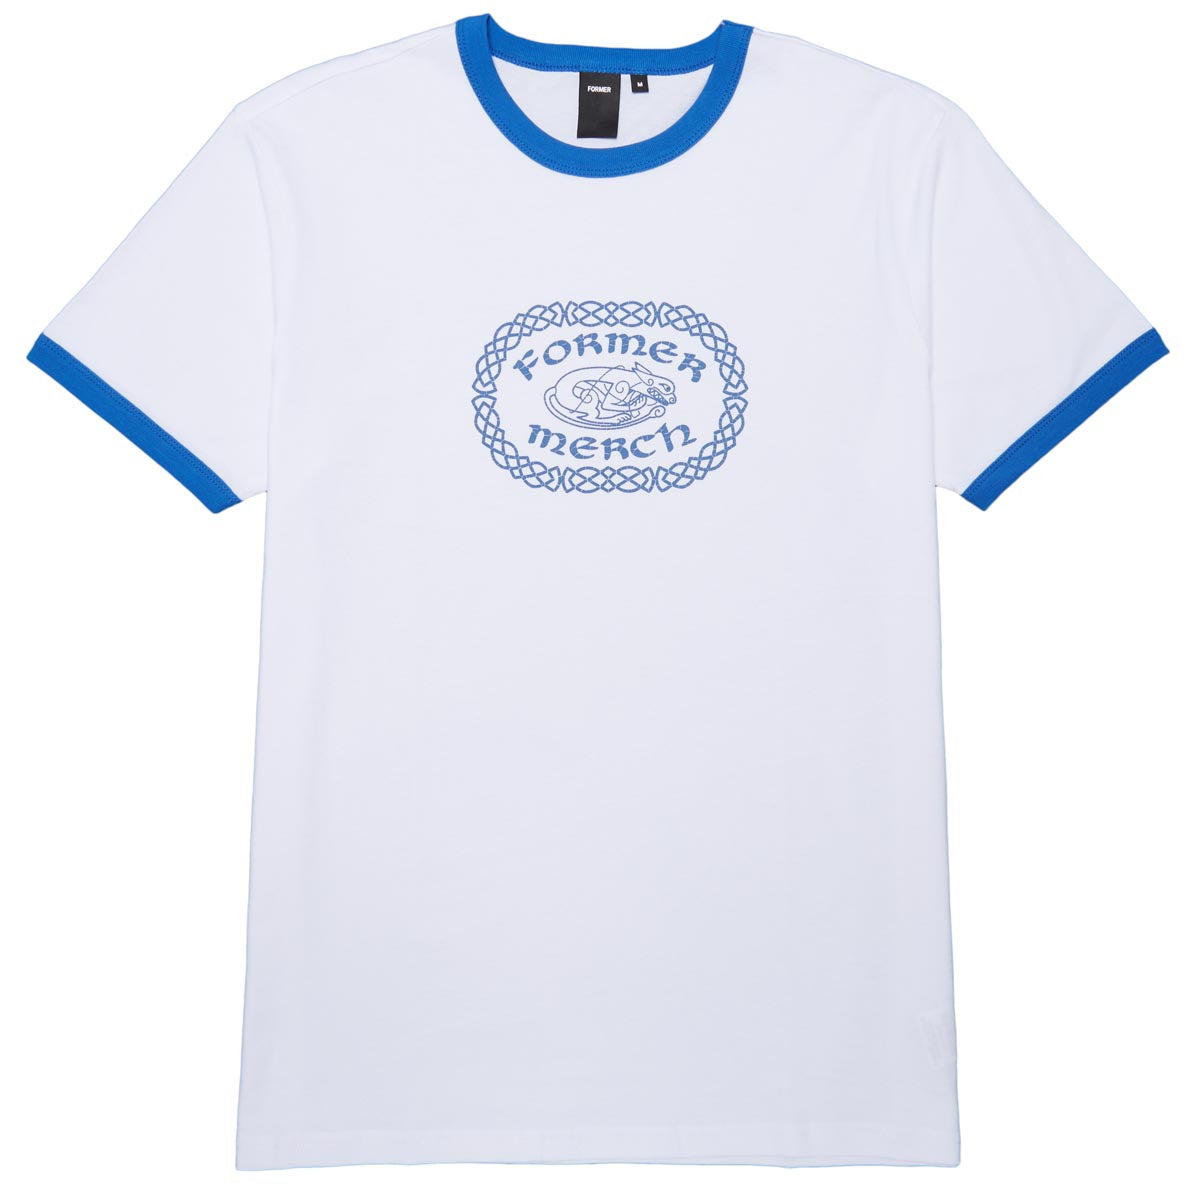 Former Celtic Ringer T-Shirt - White Cobalt image 1